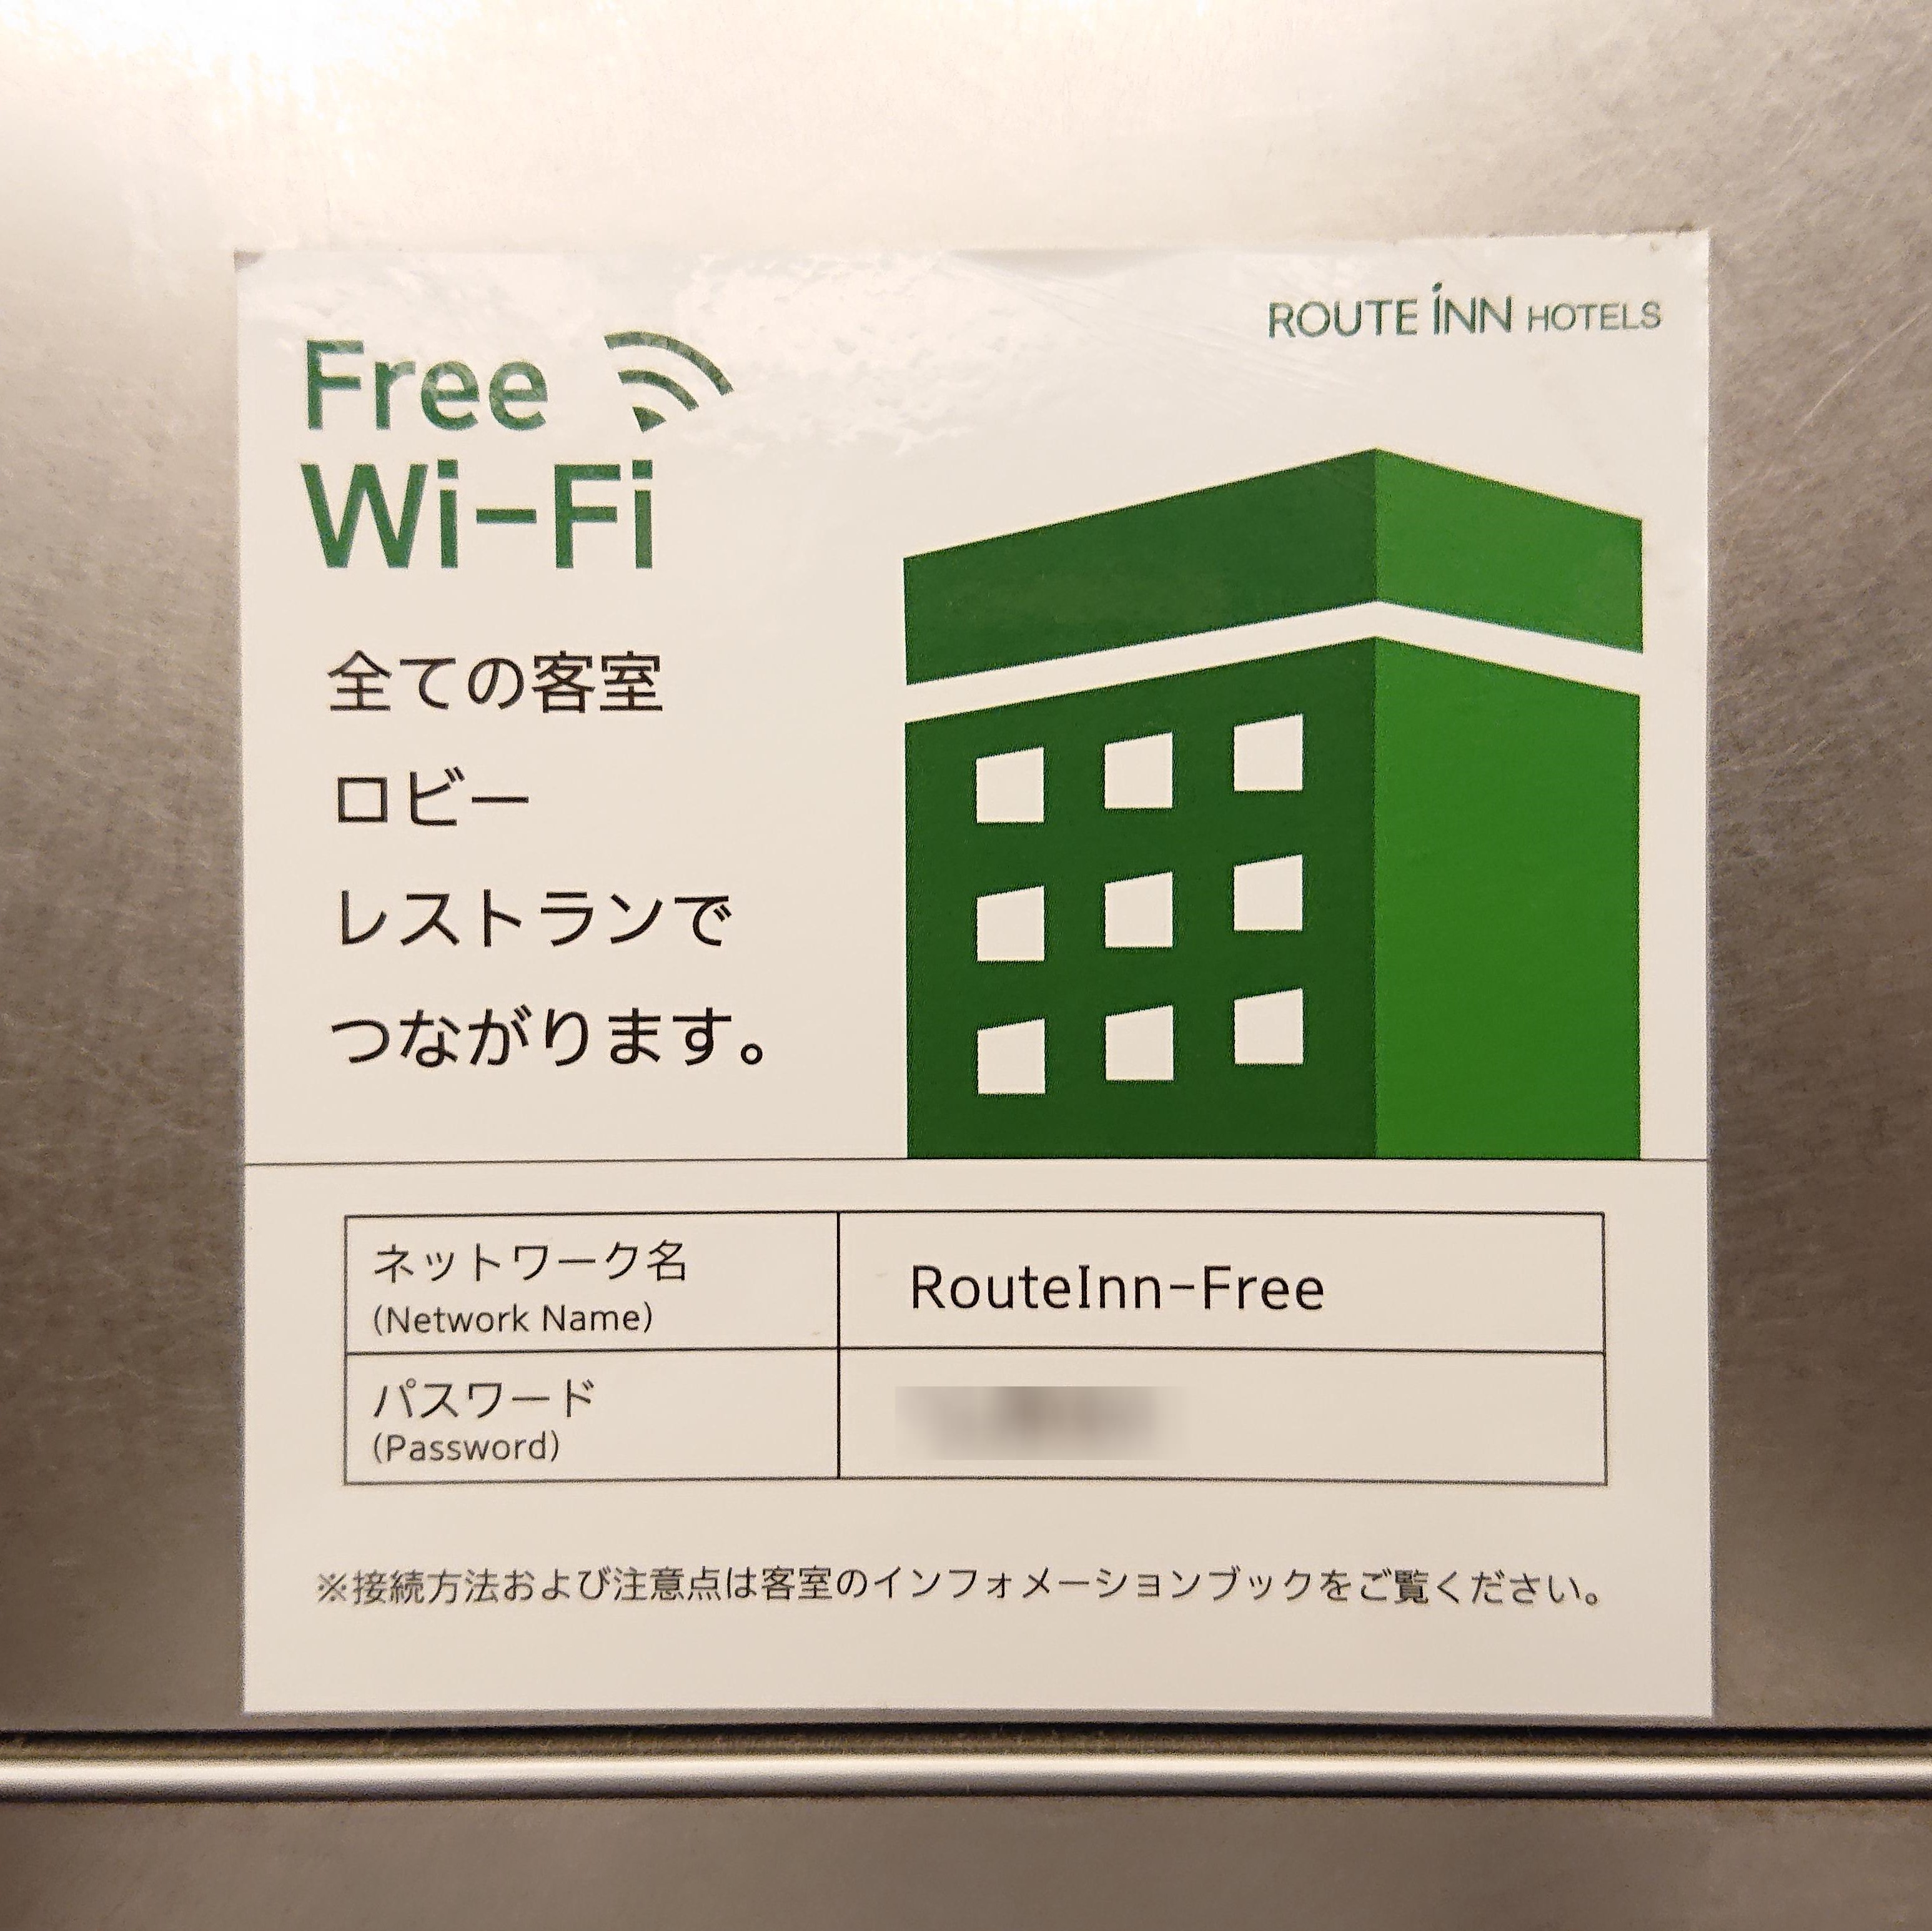 ホテルルートインで利用できる無料wi Fi Routeinn Free の設定方法と